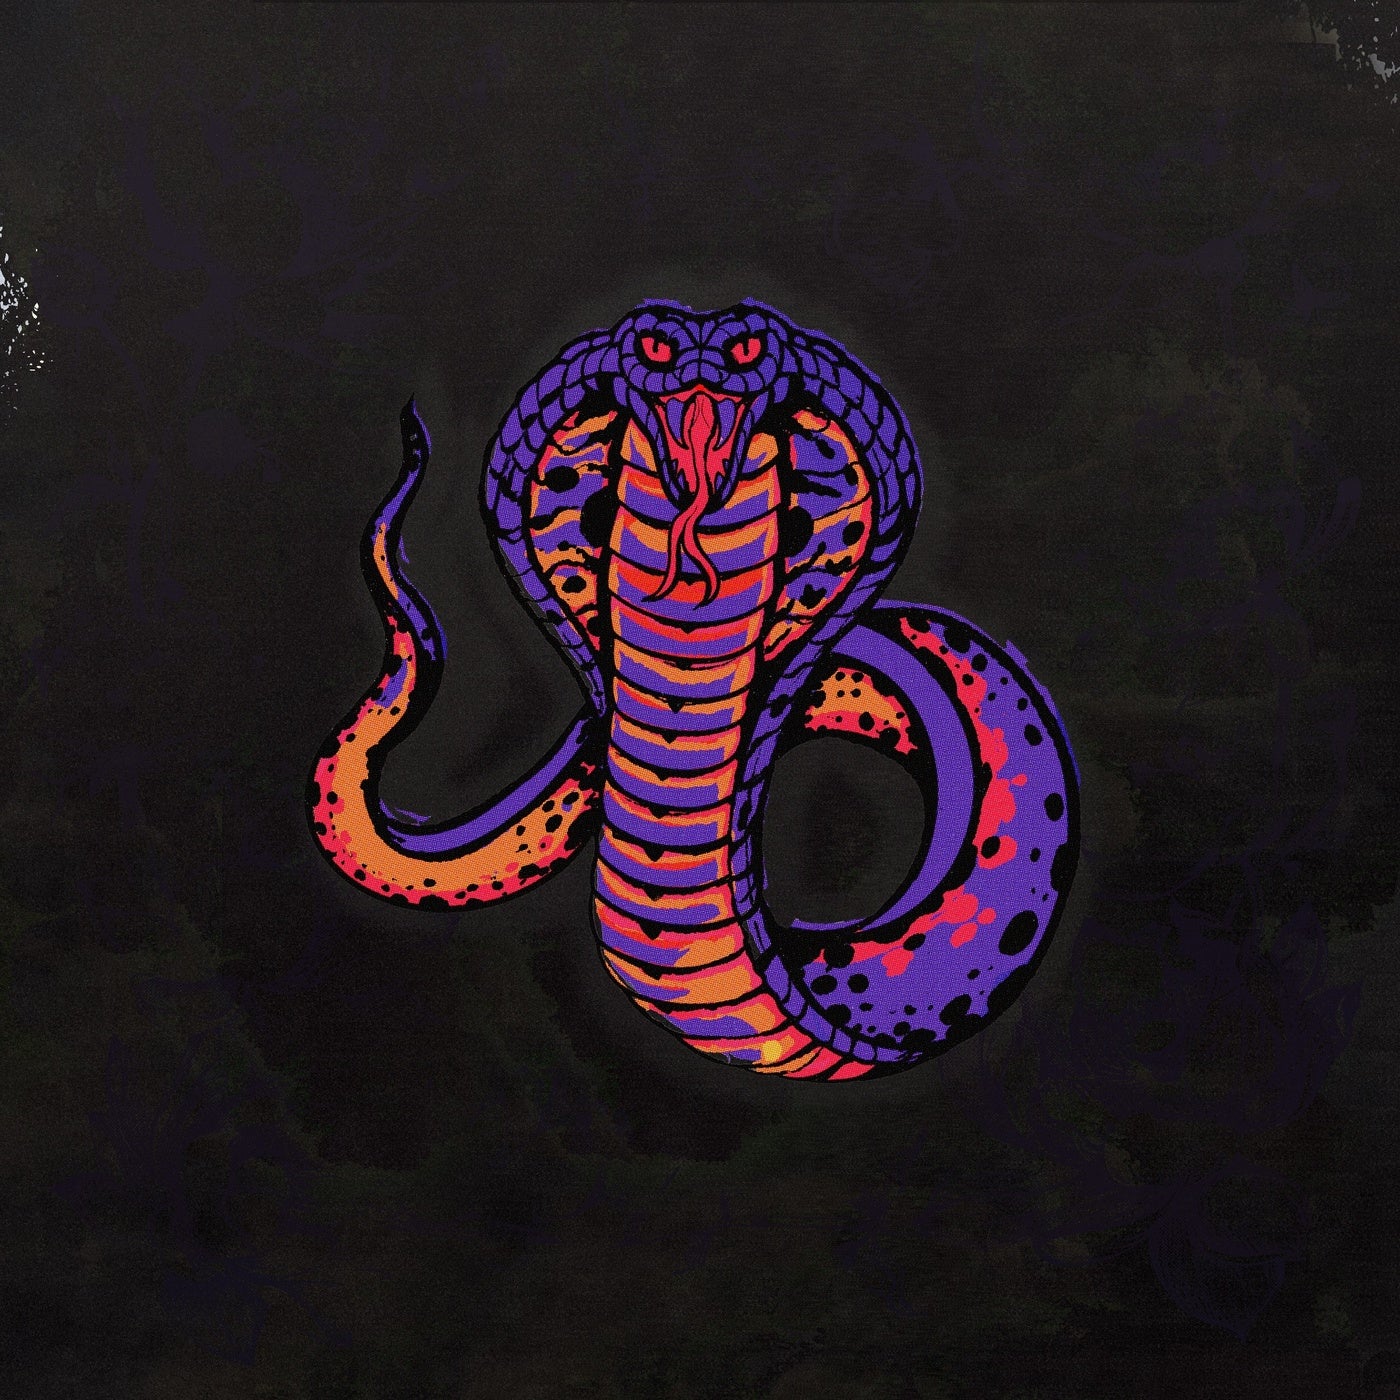 Snake EP